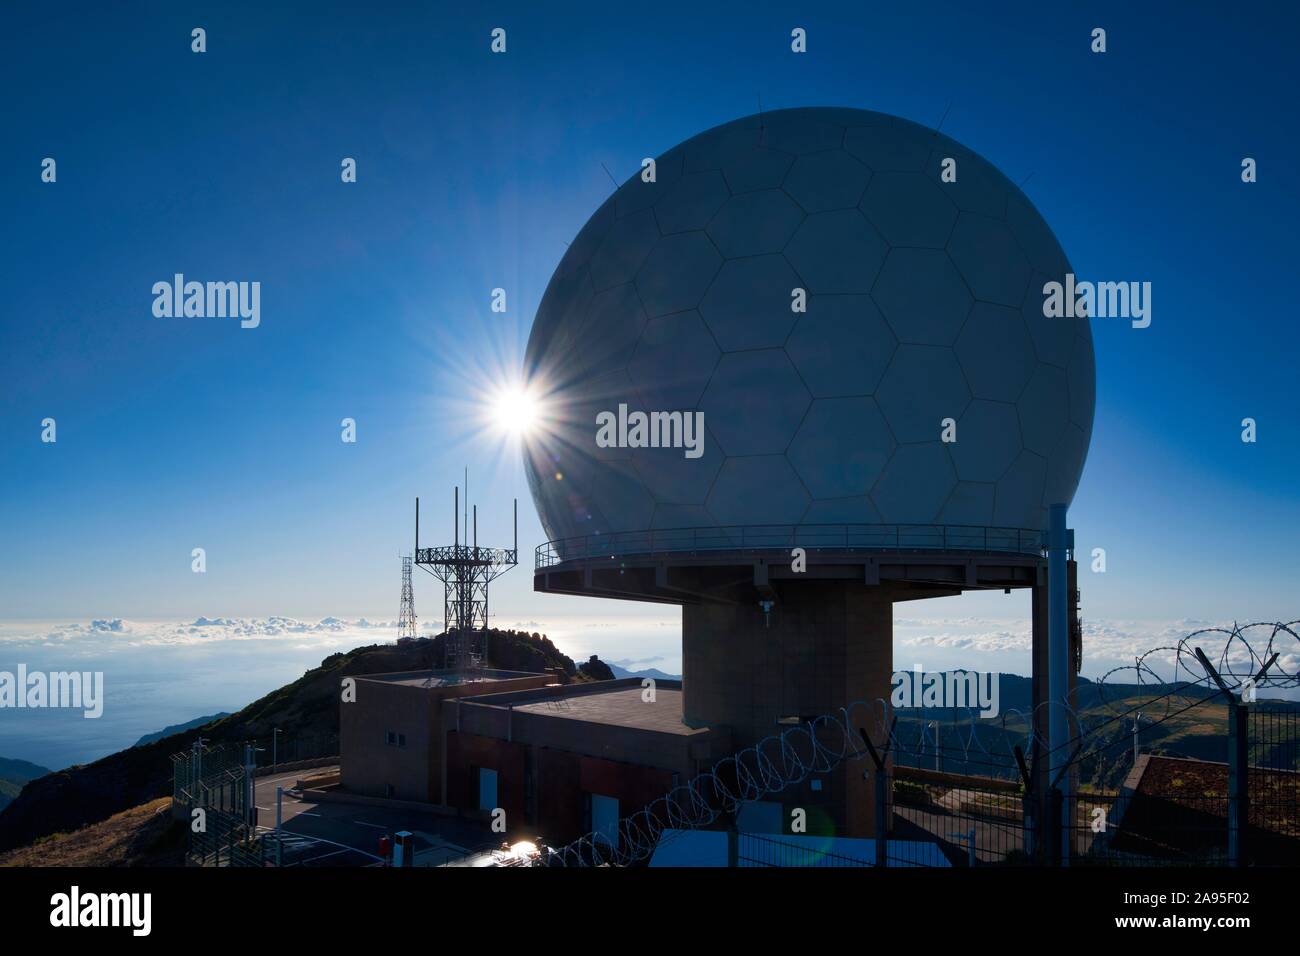 Observatory Forca Aerea on the Pico do Arieiro, Parque Natural da Madeira, Madeira, Portugal Stock Photo